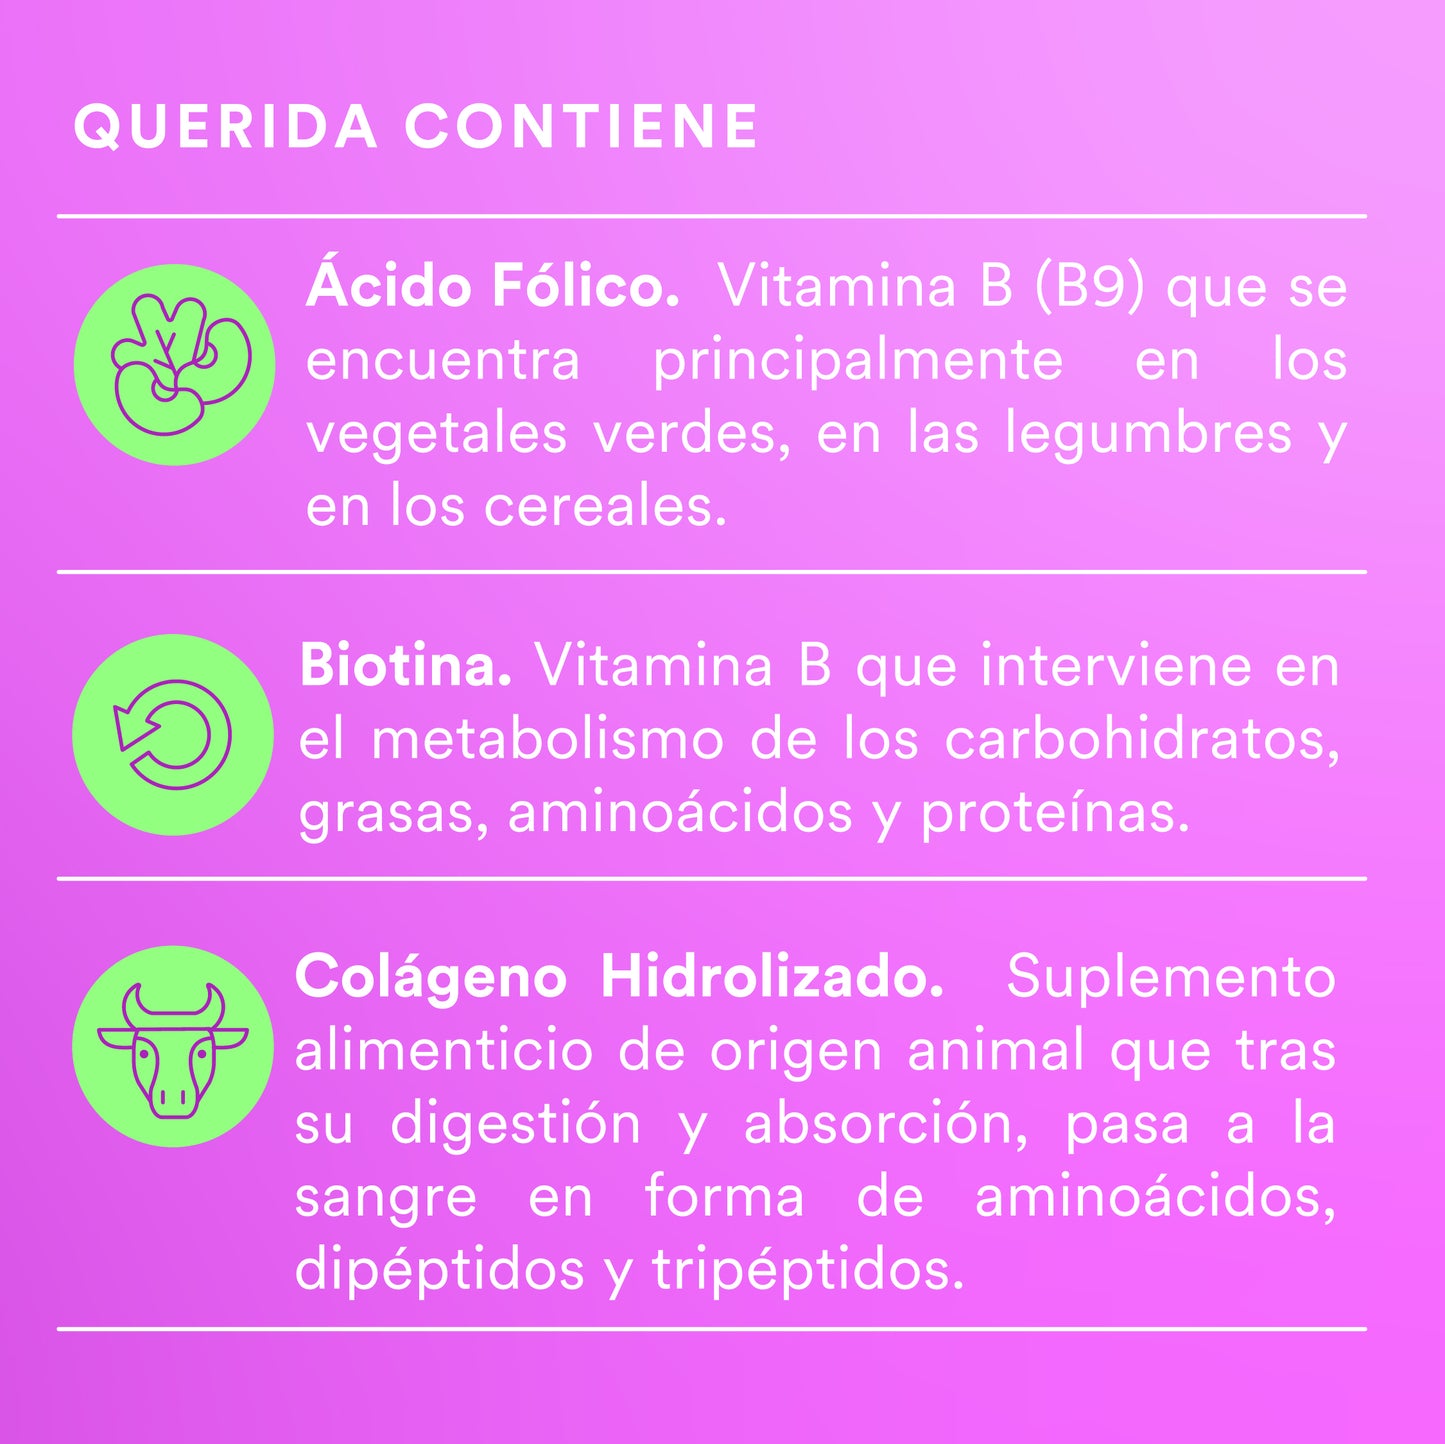 QUERIDA - Women's Multivitamin • Folic Acid • Biotin • Collagen • Vitamins AB and D | 120 capsules 